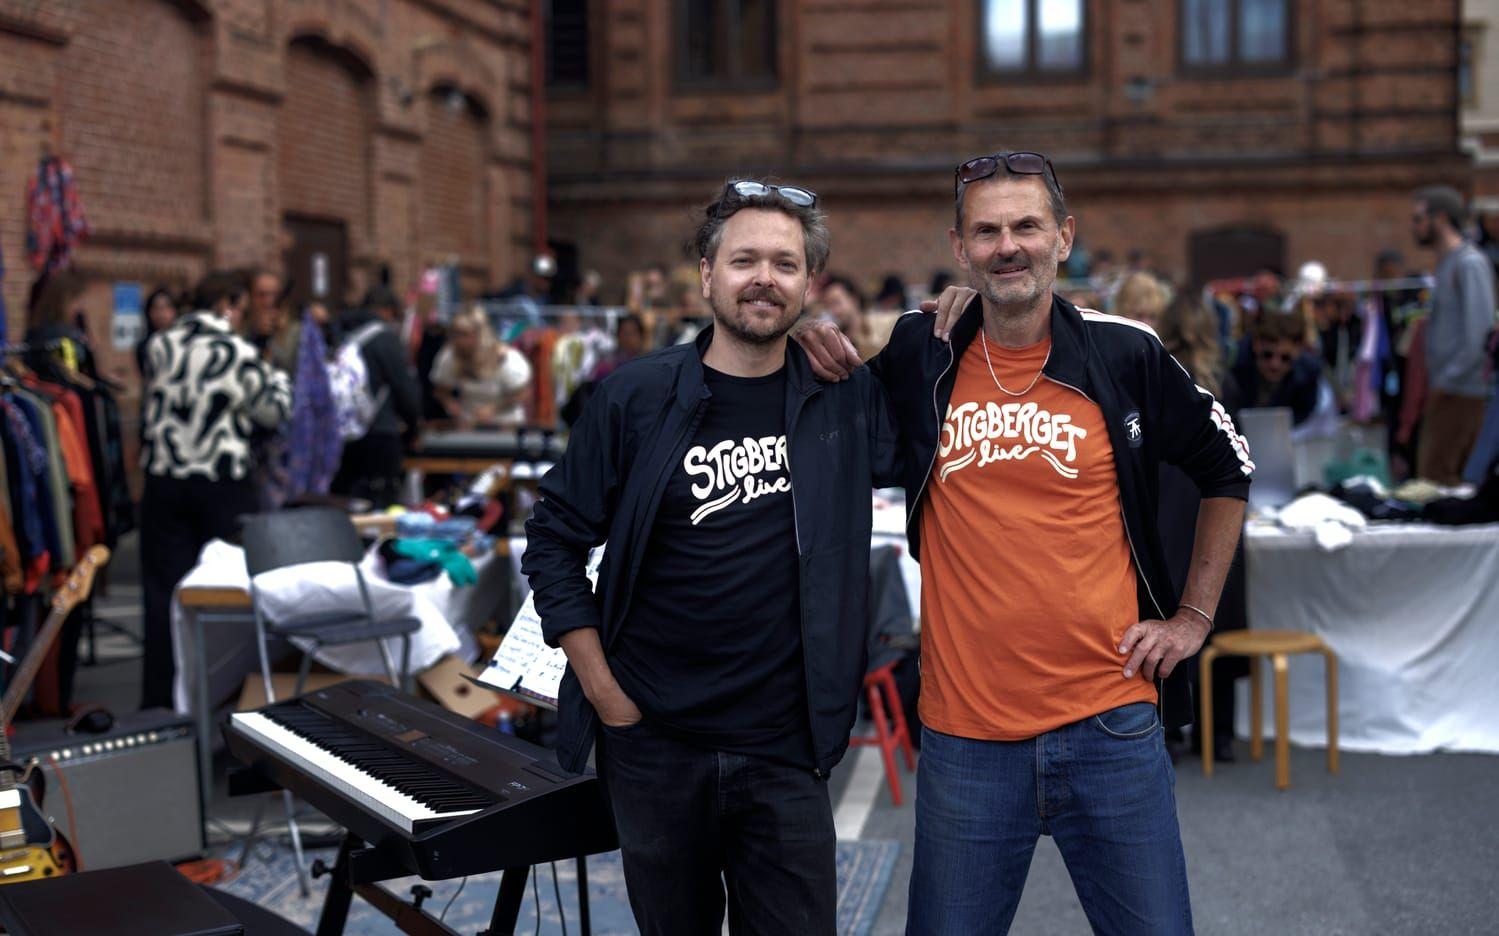 Initiativet till gårdsfesten togs av Gustav Nyqvist och Erik Ridderstolpe som båda jobbar på Musikens hus. 